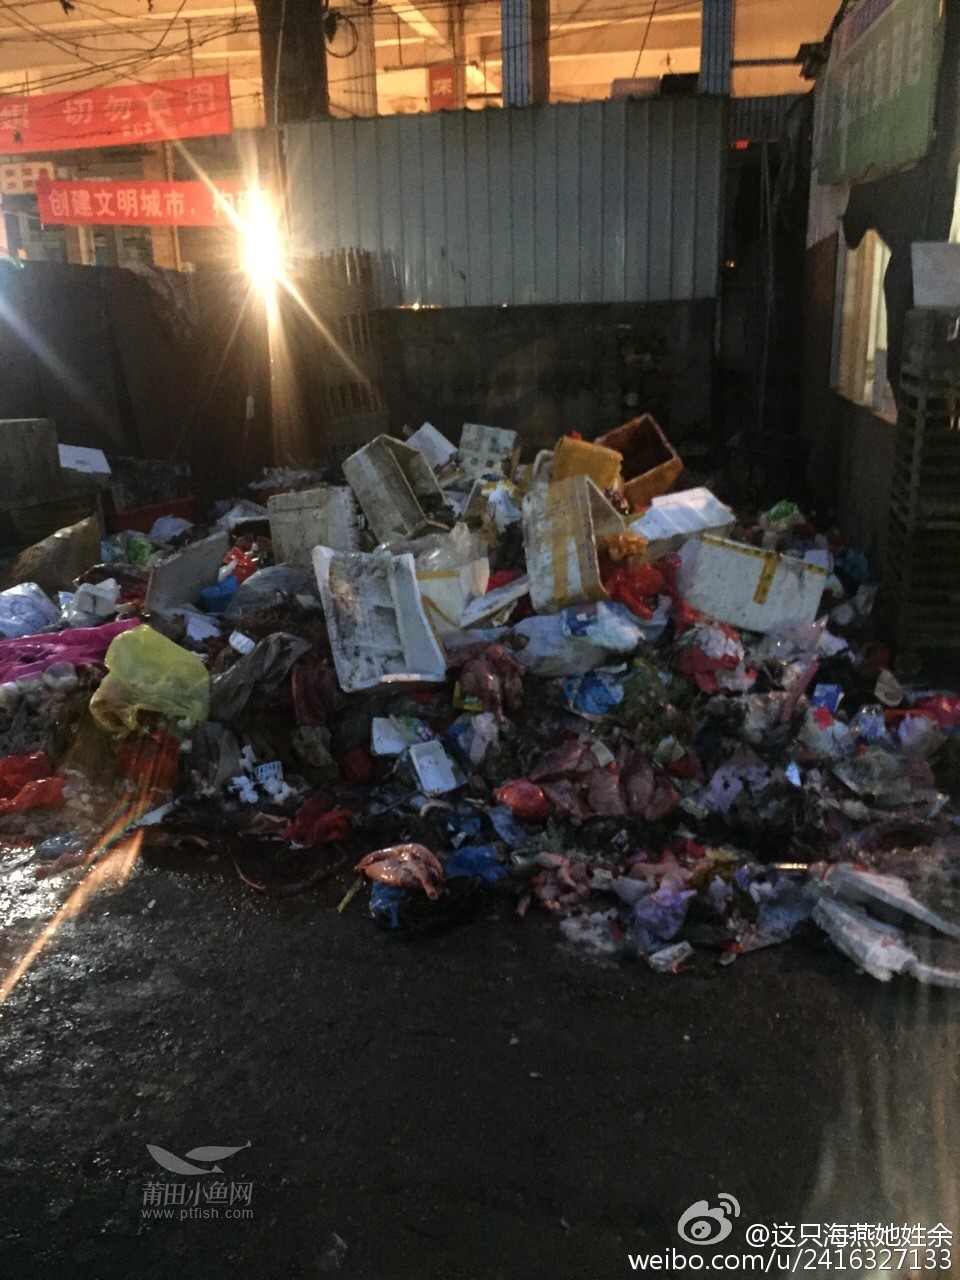 黄石菜市场的垃圾堆太恶心了,有关部门不管管